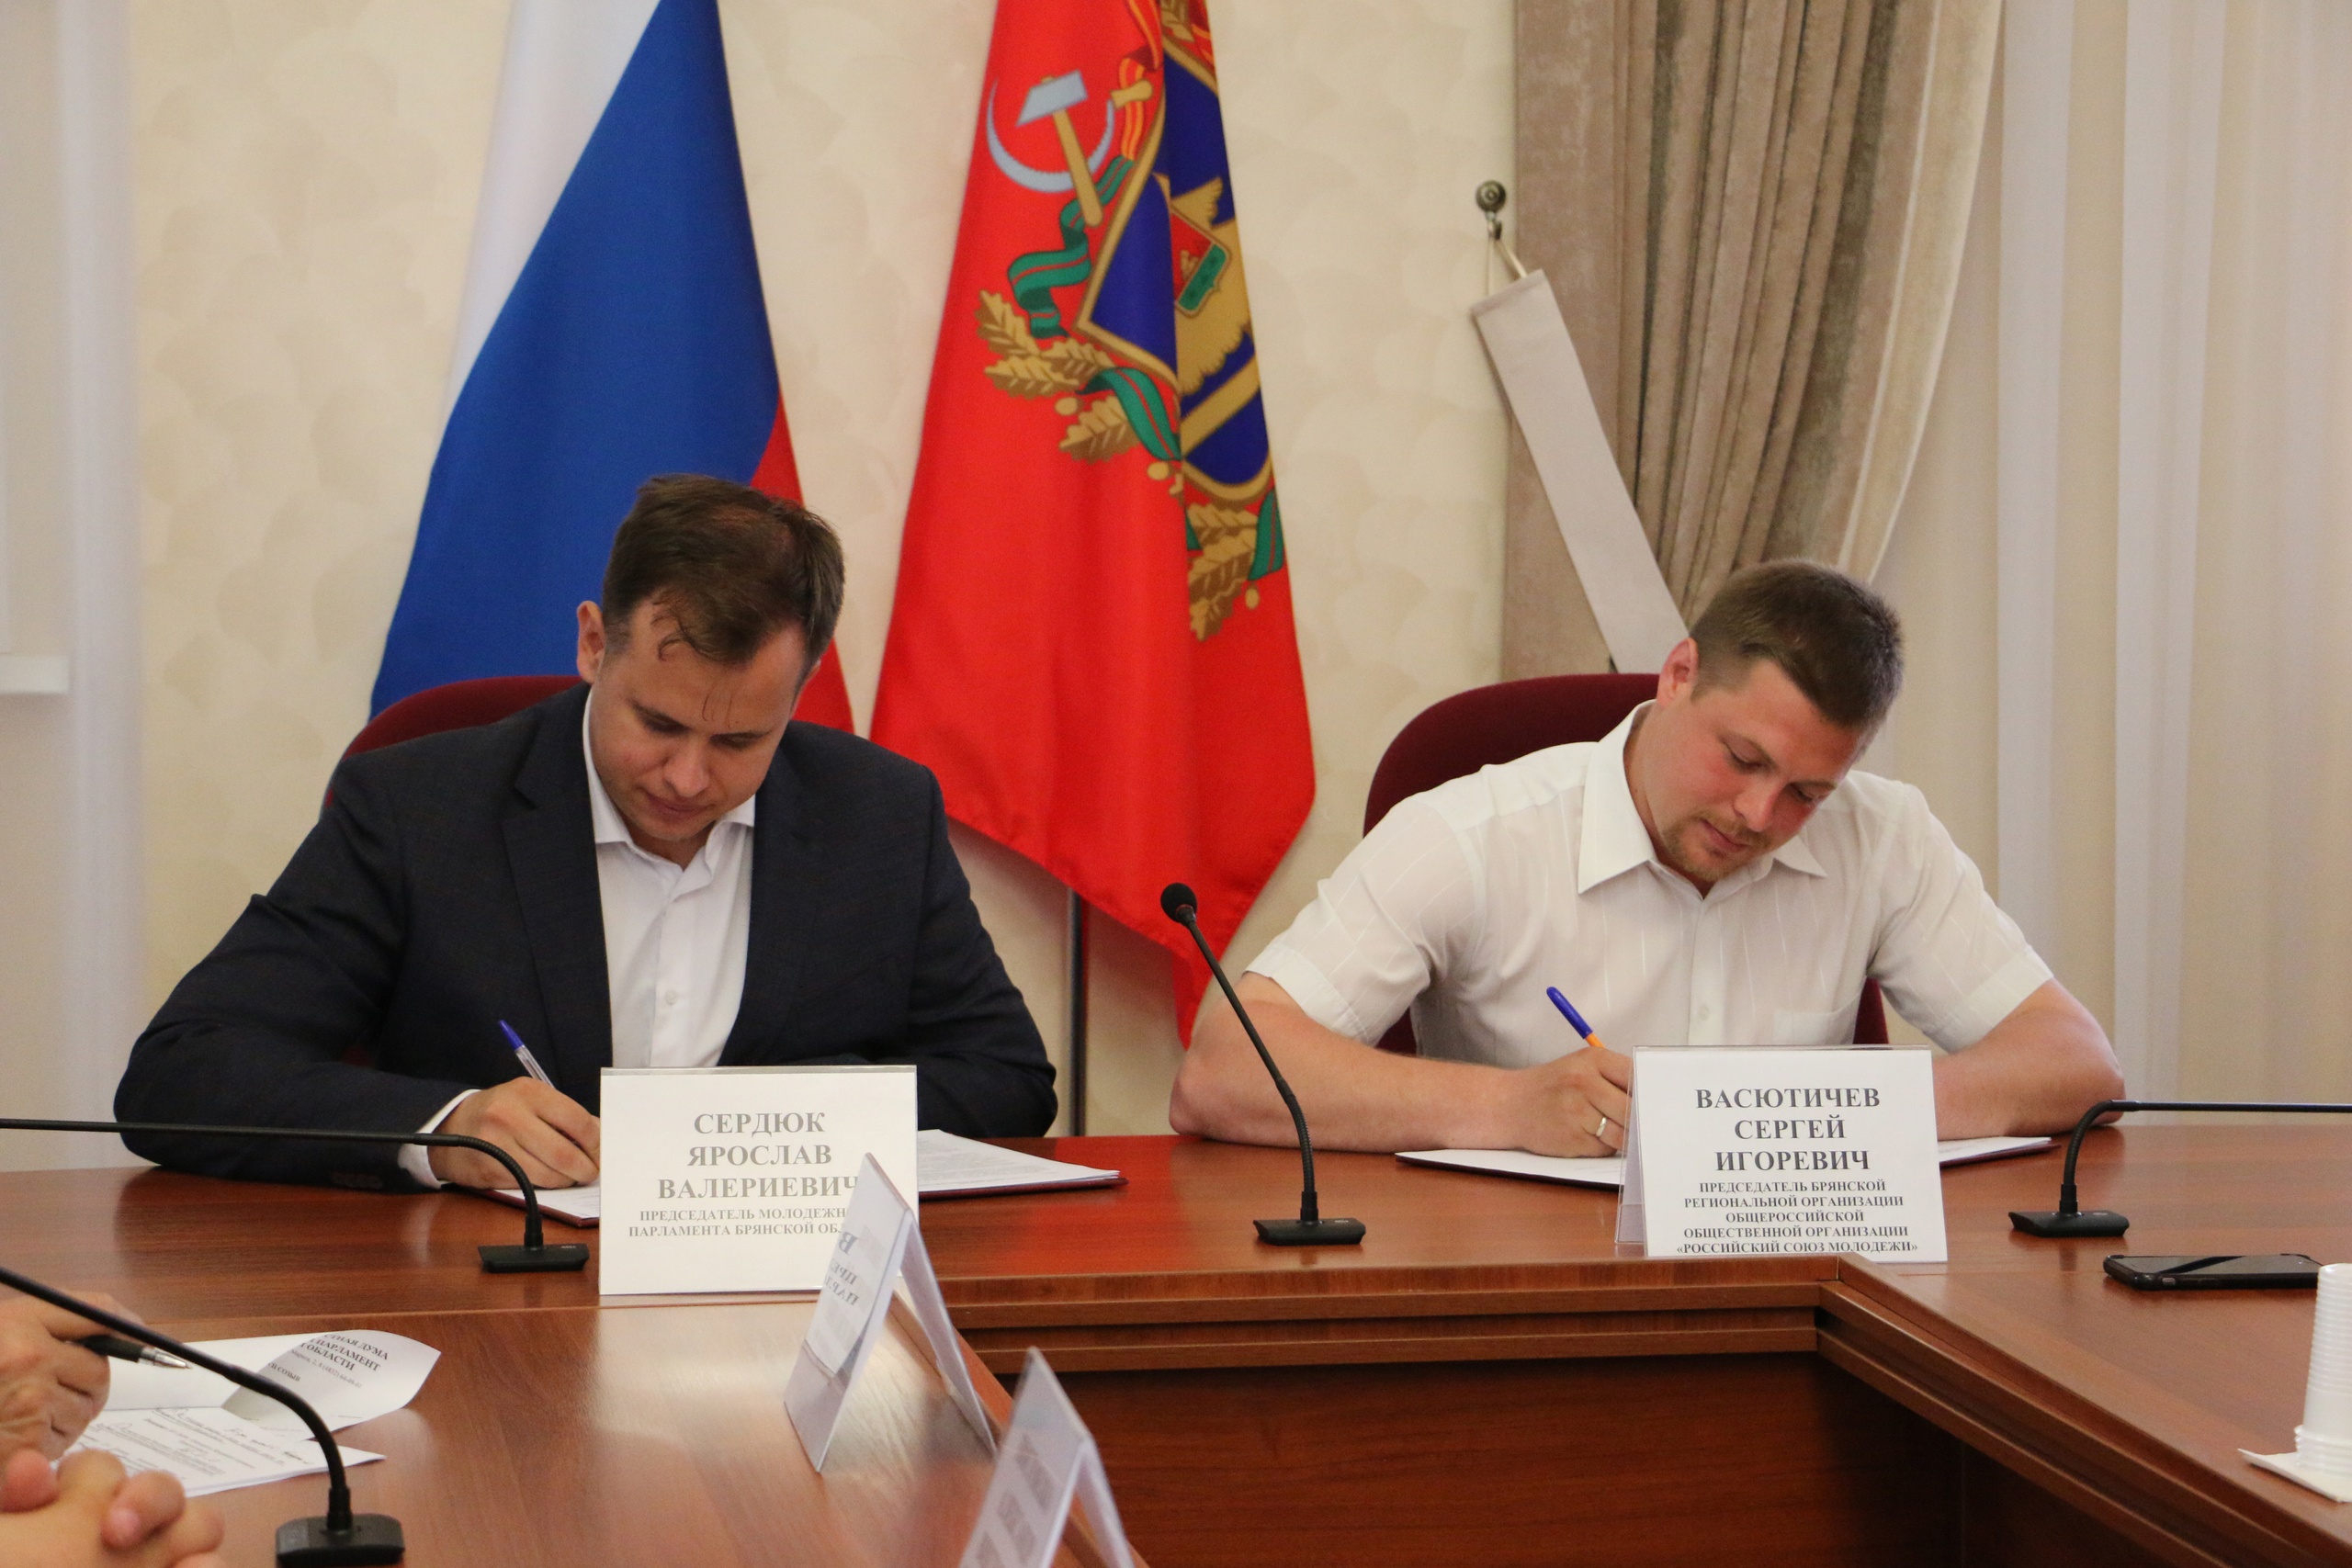 Подписано соглашение о сотрудничестве между молодежным парламентом и союзом молодежи России